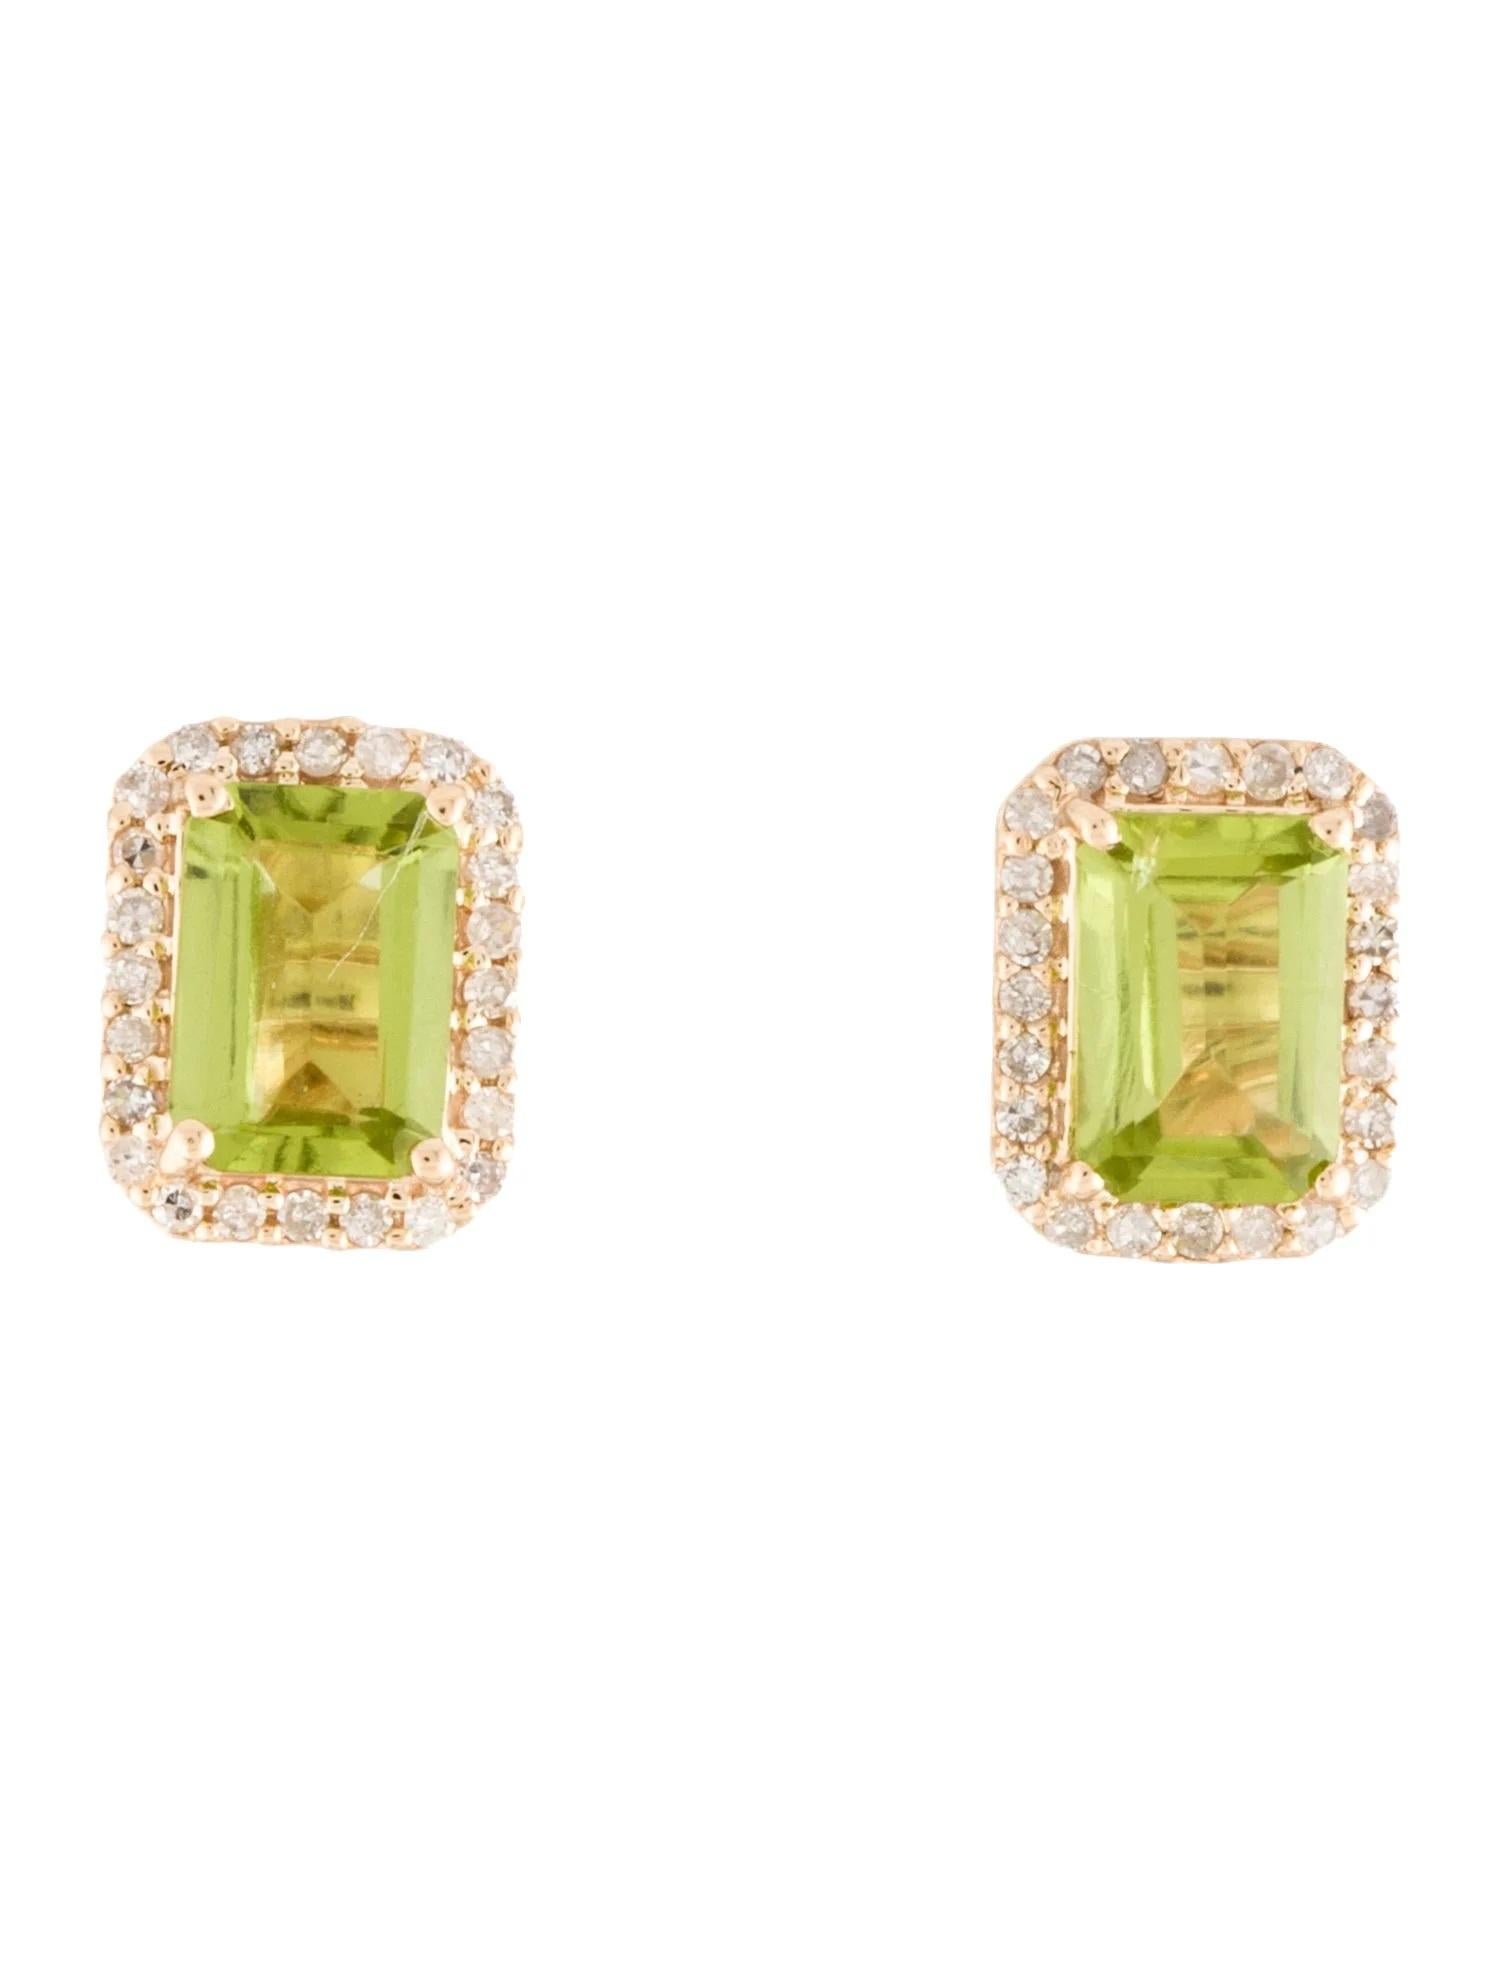 Oval Cut 14K Peridot & Diamond Stud Earrings, Green Oval Stones, 0.18ct Total Diamond  For Sale